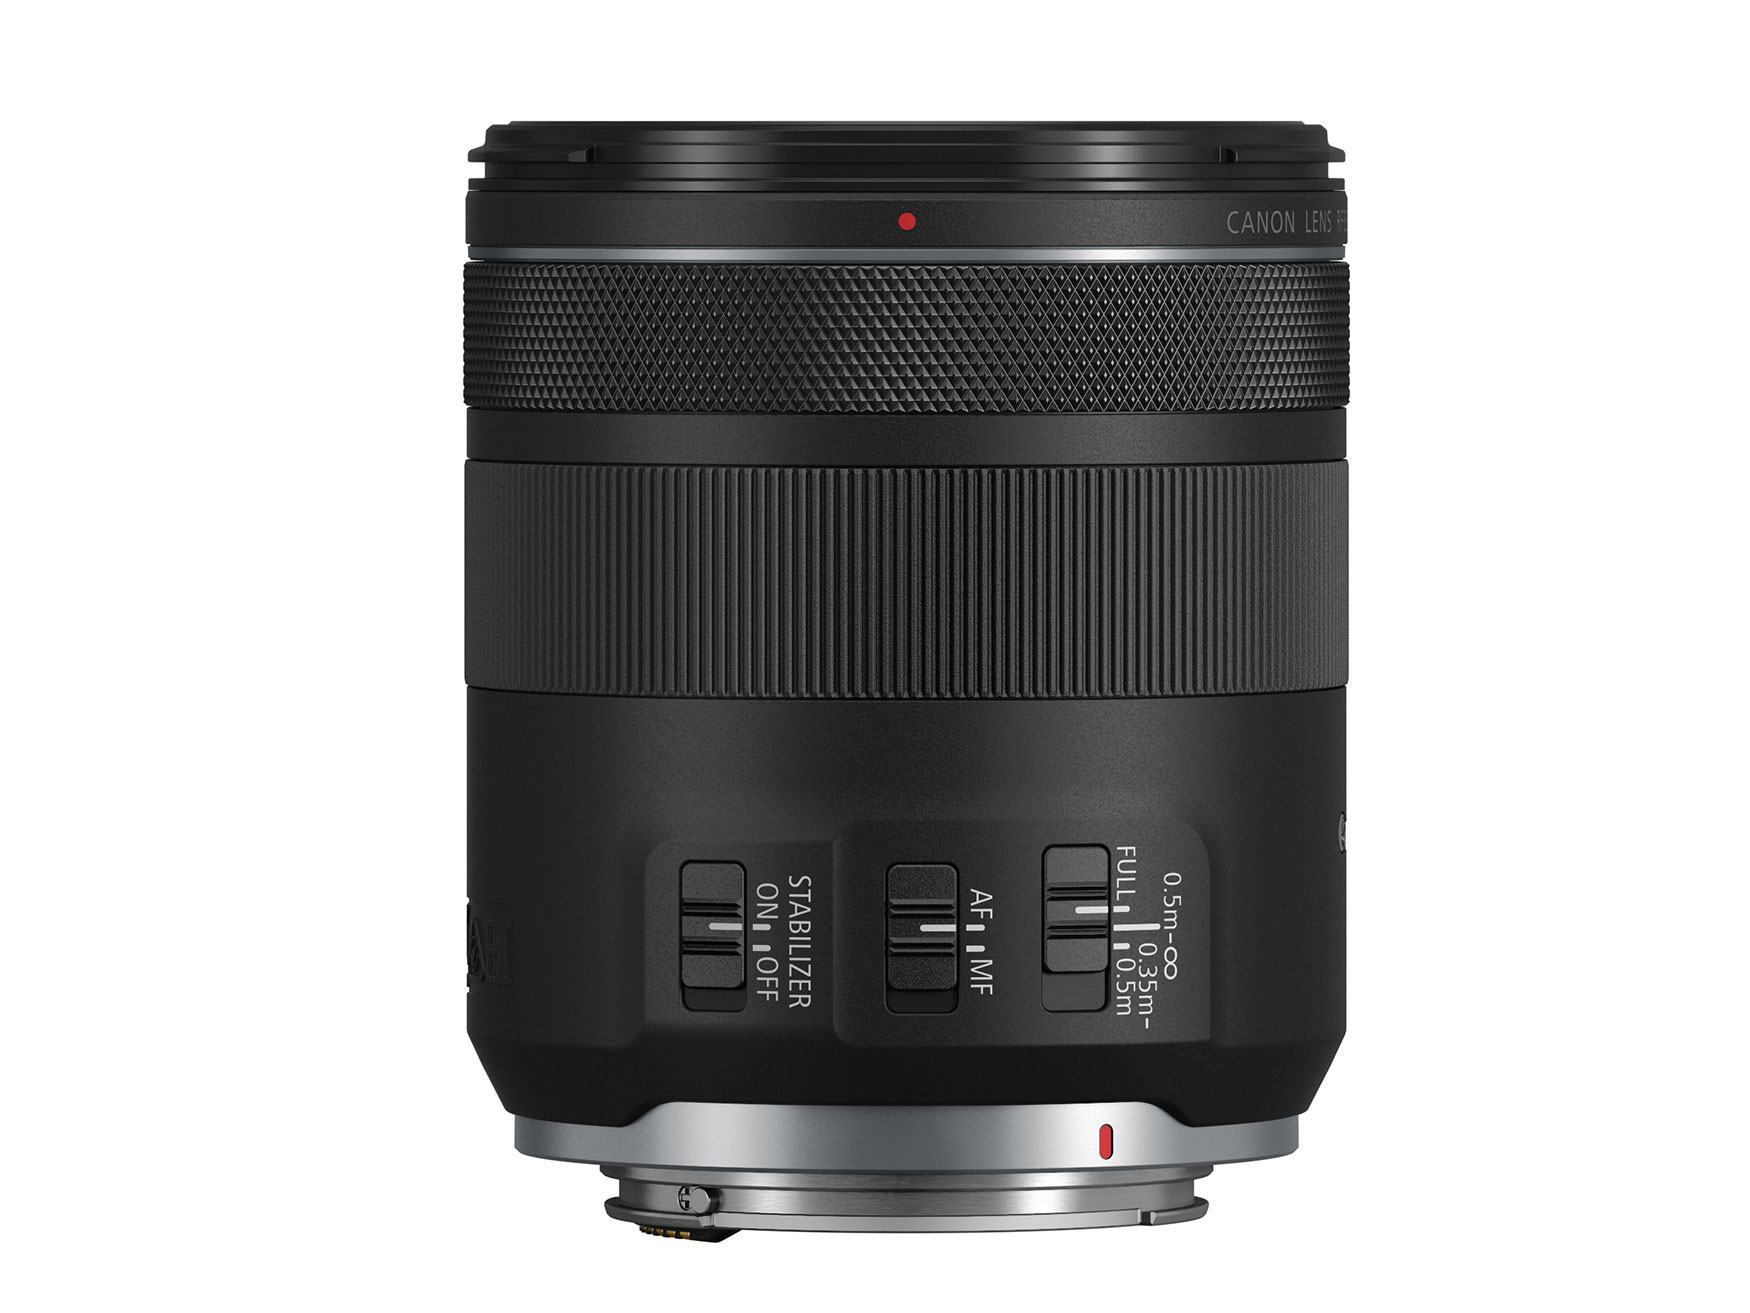 Canon ra mắt ống kính RF 85mm F2 Macro IS STM dành cho nhiếp ảnh và chụp cận cảnh